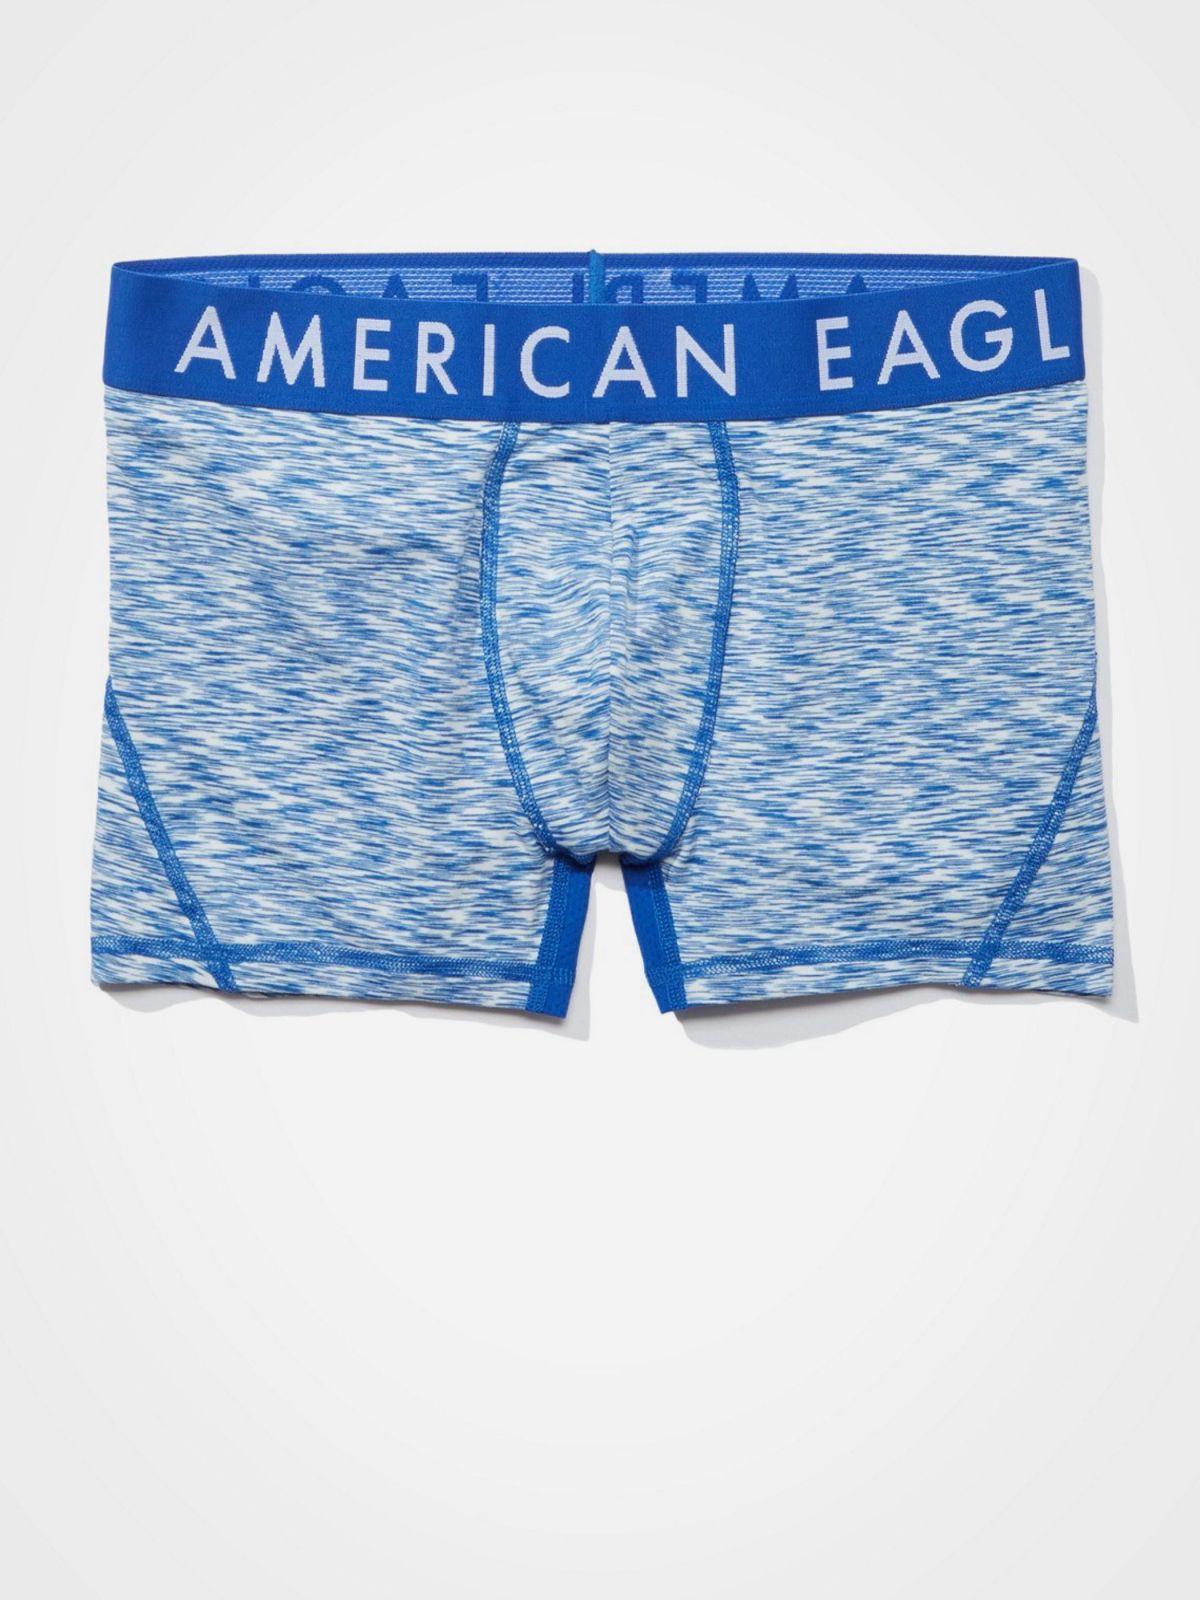  תחתוני בוקסר לונגליין מלאנז' עם לוגו של AMERICAN EAGLE